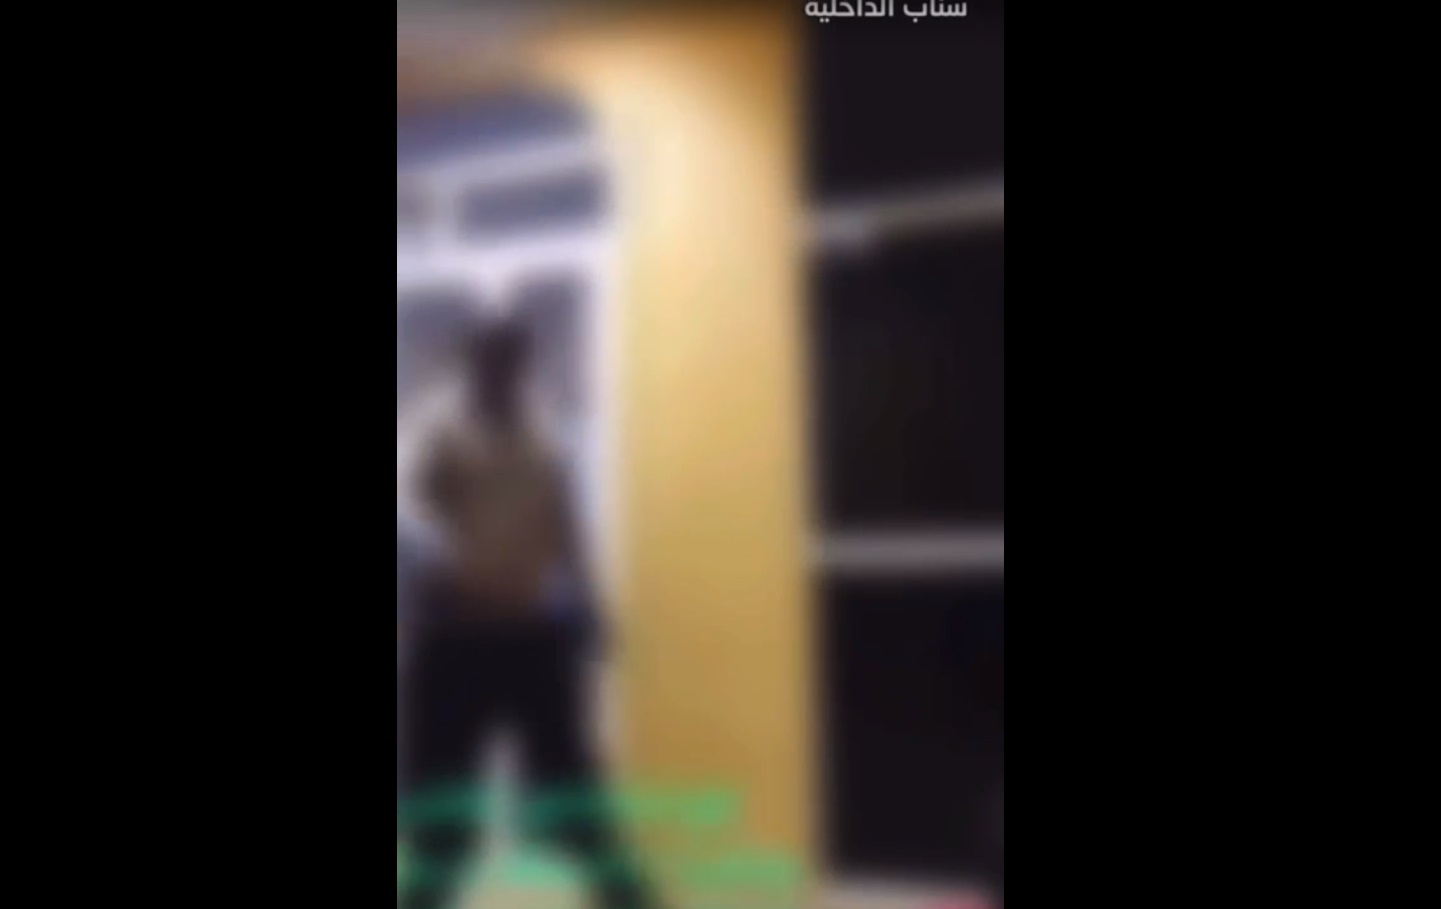 شرطة الشرقية: فيديو الاعتداء في أحد مكاتب الاستقدام قديم